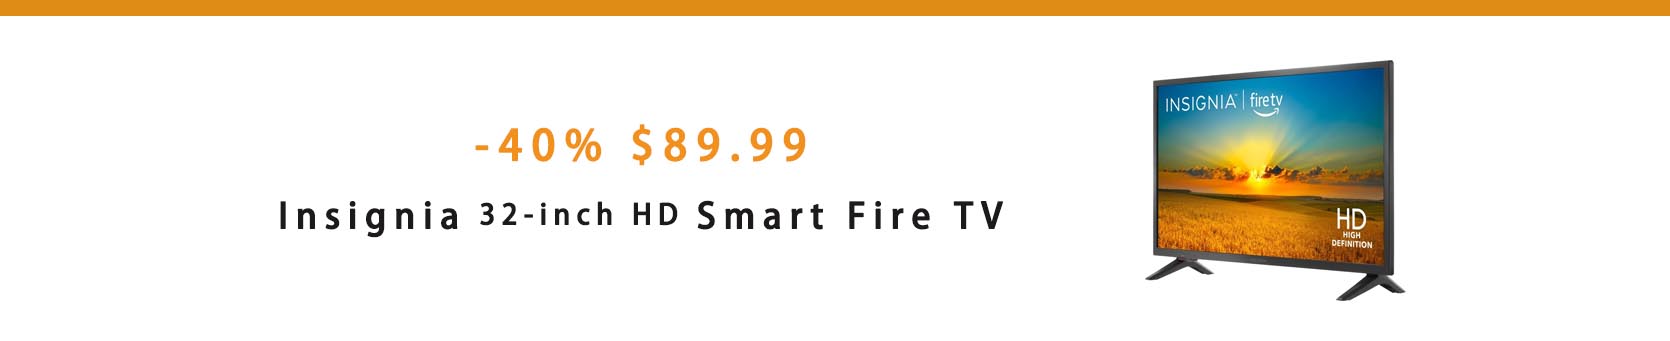 Smart Fire TV 